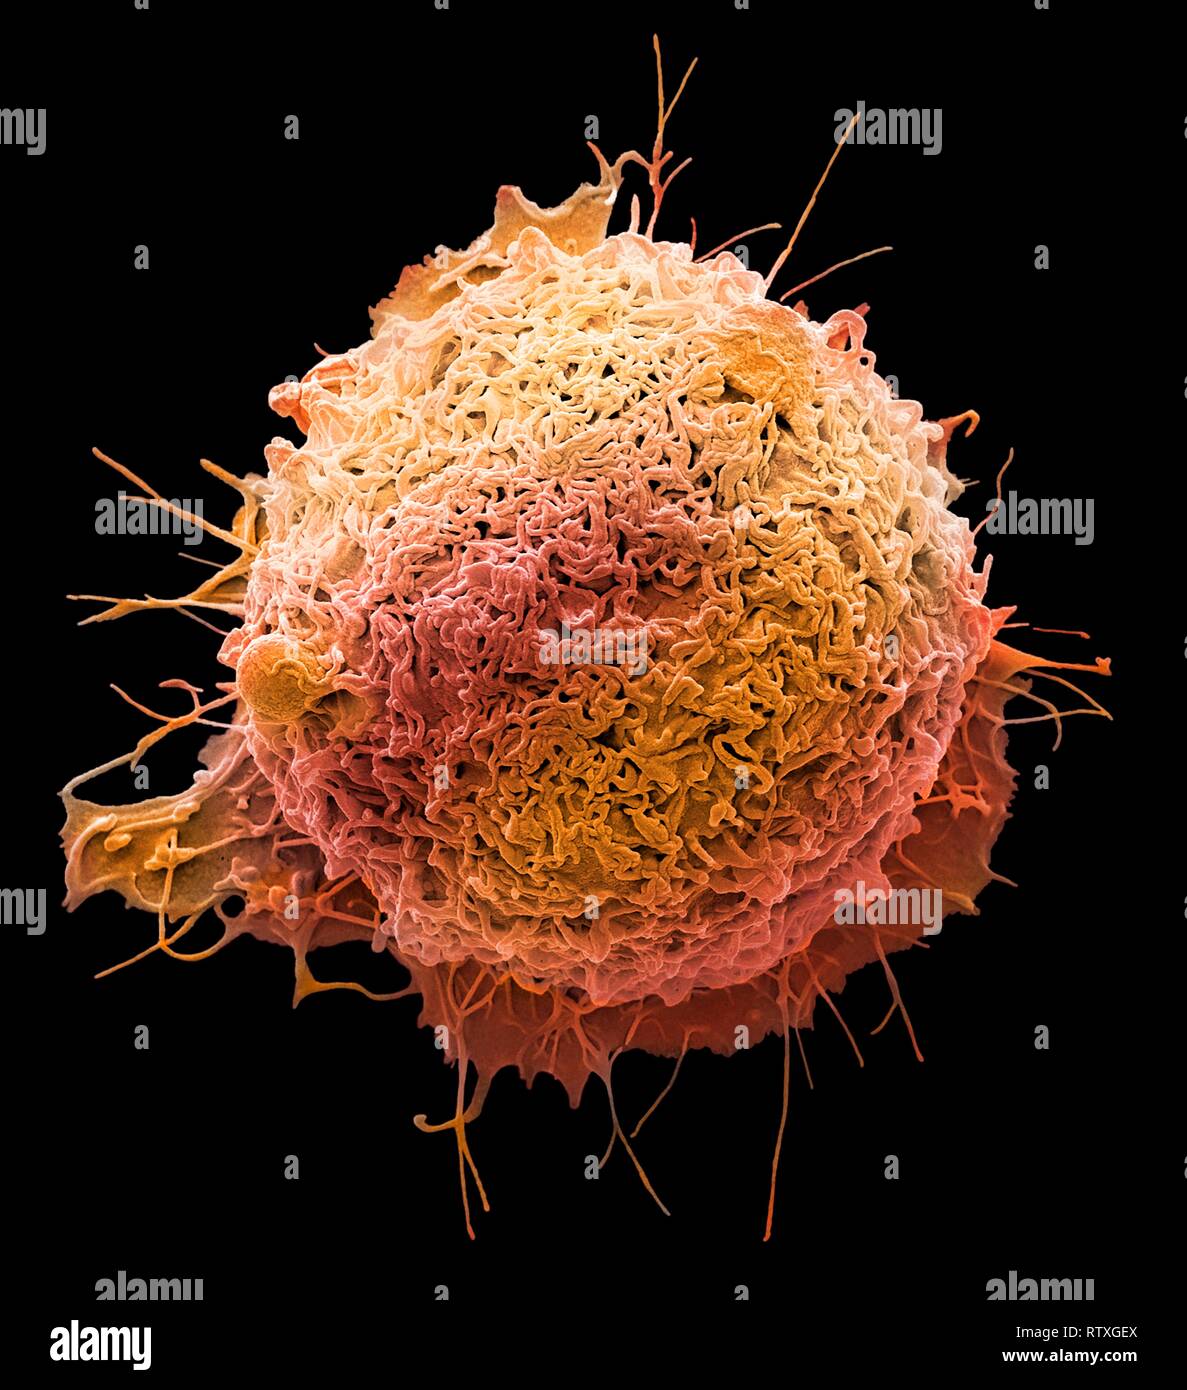 Les cellules du cancer colorectal. Couleur de l'analyse des électrons Microphotographie (SEM) d'une cellule de cancer du côlon (gros intestin). Le cancer du côlon est al Banque D'Images